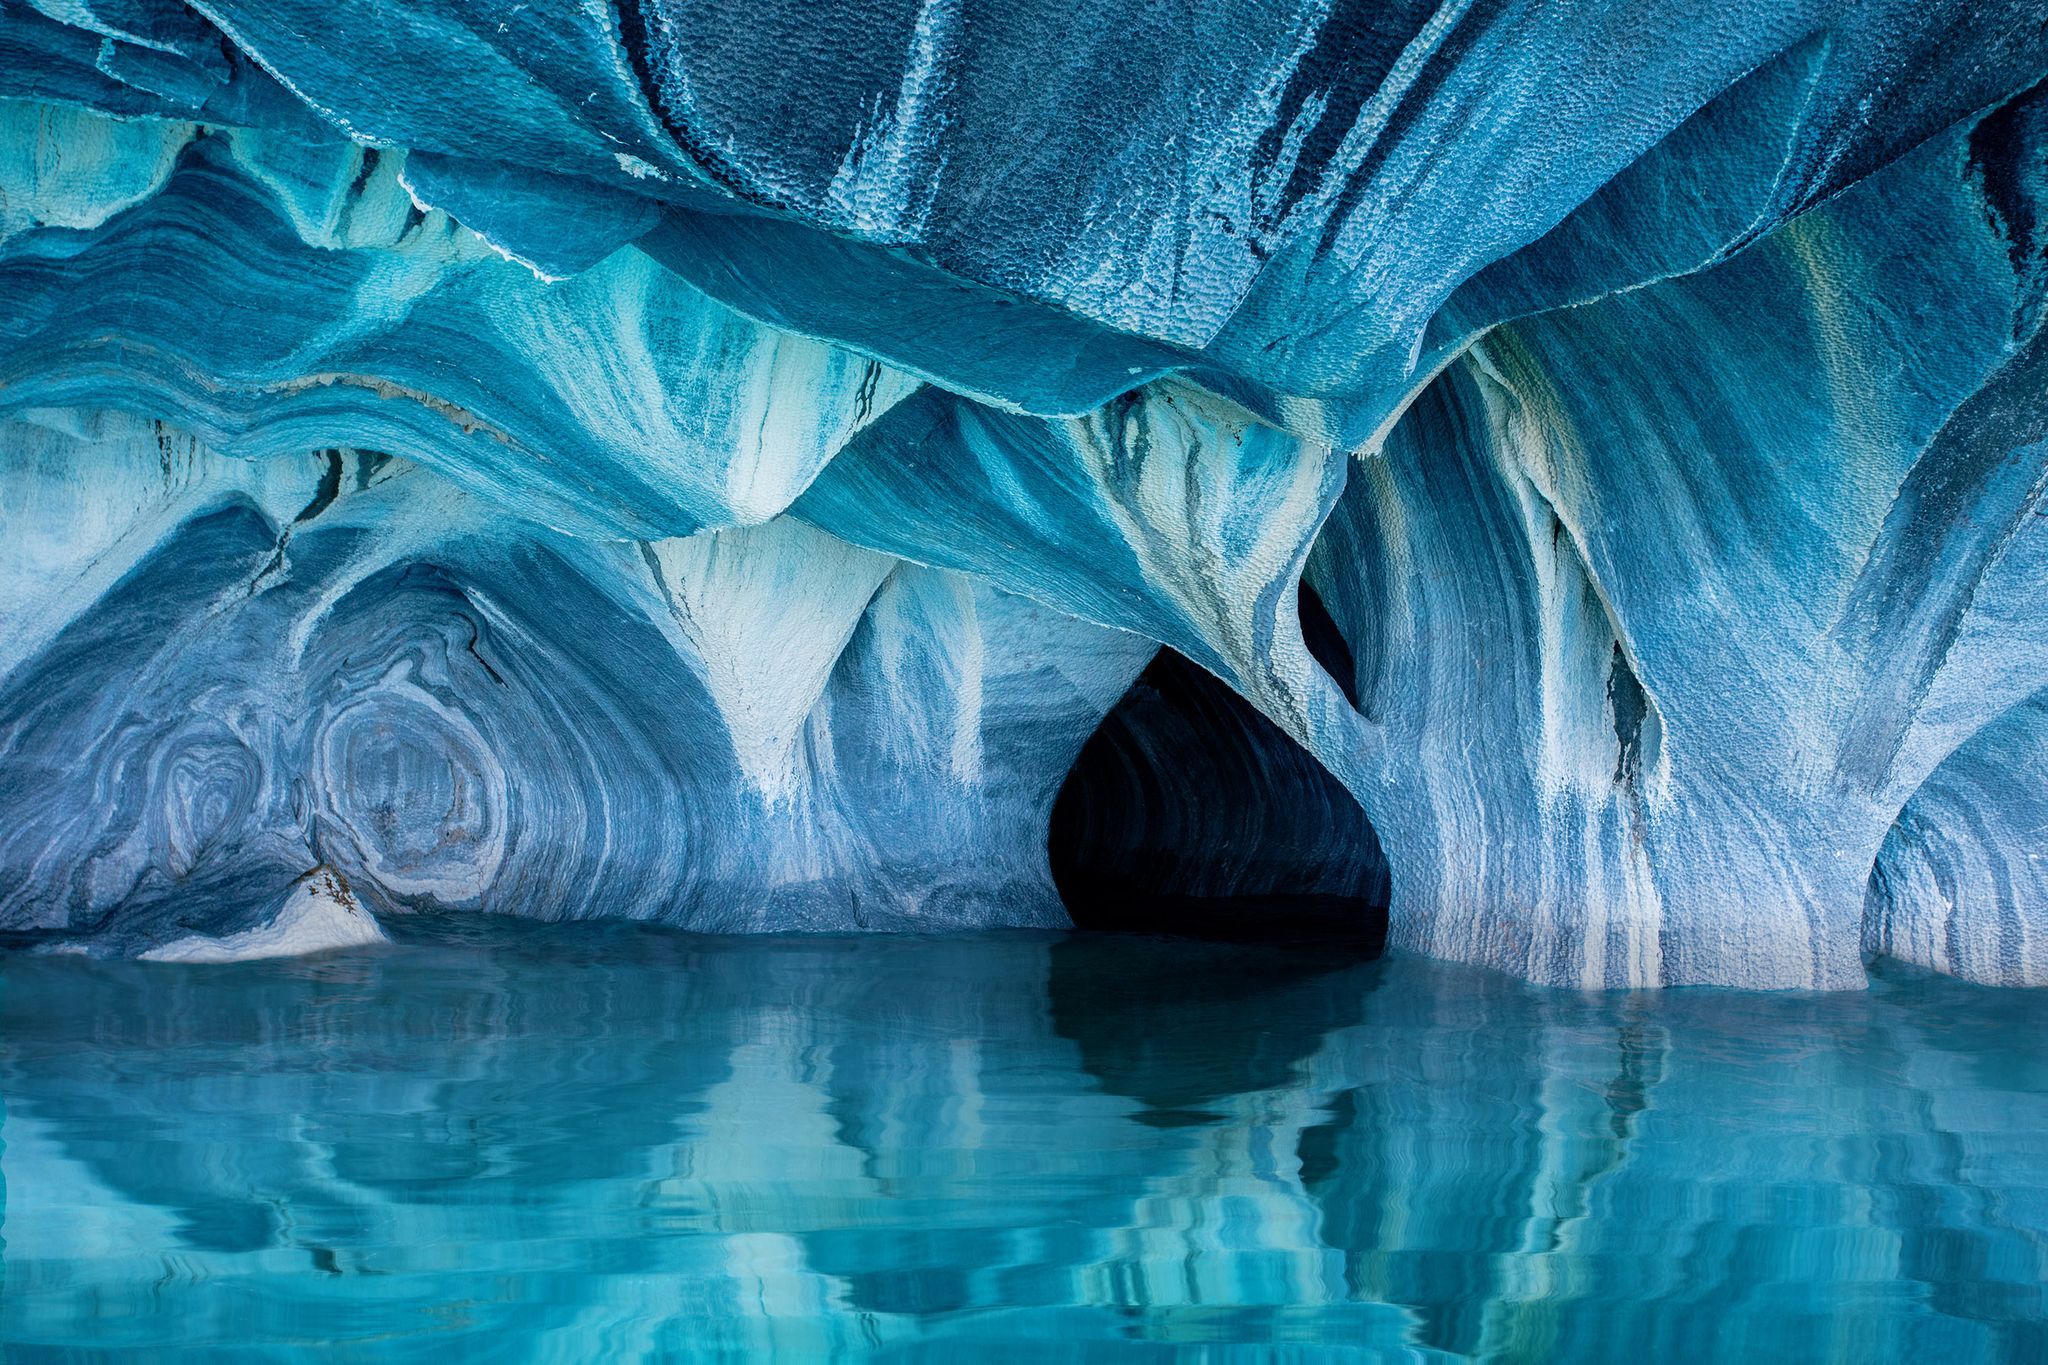 La Patagonia alberga uno de los tesoros más apartados del mundo, considerado un verdadero espectáculo natural